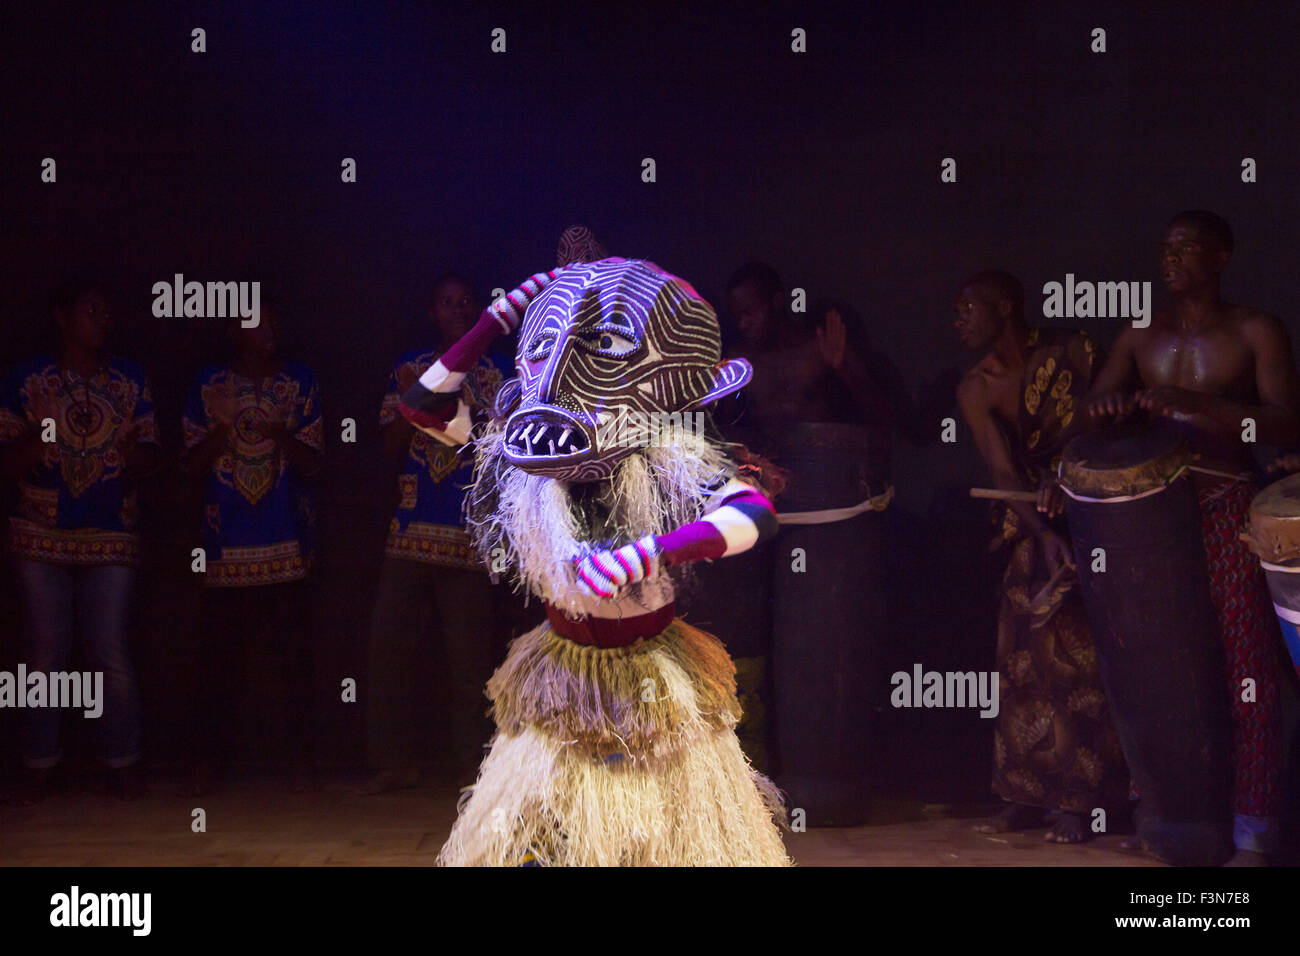 (151010)--Havanna, 10. Oktober 2015 (Xinhua)--Simbabwe Tänzer traditionelle Makishi Tanz an Old Mutual Theatre, Harare, Simbabwe, am 9. Oktober 2015. Makishi Tanz, ursprünglich am Ende eine jährliche Initiationsritual für Jungen im Alter zwischen acht und zwölf im ländlichen Simbabwe und Sambia, ist besonders bekannt für die Einbeziehung von schön bemalten Masken, die verschiedenen spirituelle Zeichen darstellen. Heute gibt es eine steigende Nachfrage nach Makishi Tänzer bei gesellschaftlichen Zusammenkünften und Reichsparteitage, da sie weniger für Einweihungsrituale durchgeführt werden. Der Tanz wurde als ein UN anerkannt. Stockfoto